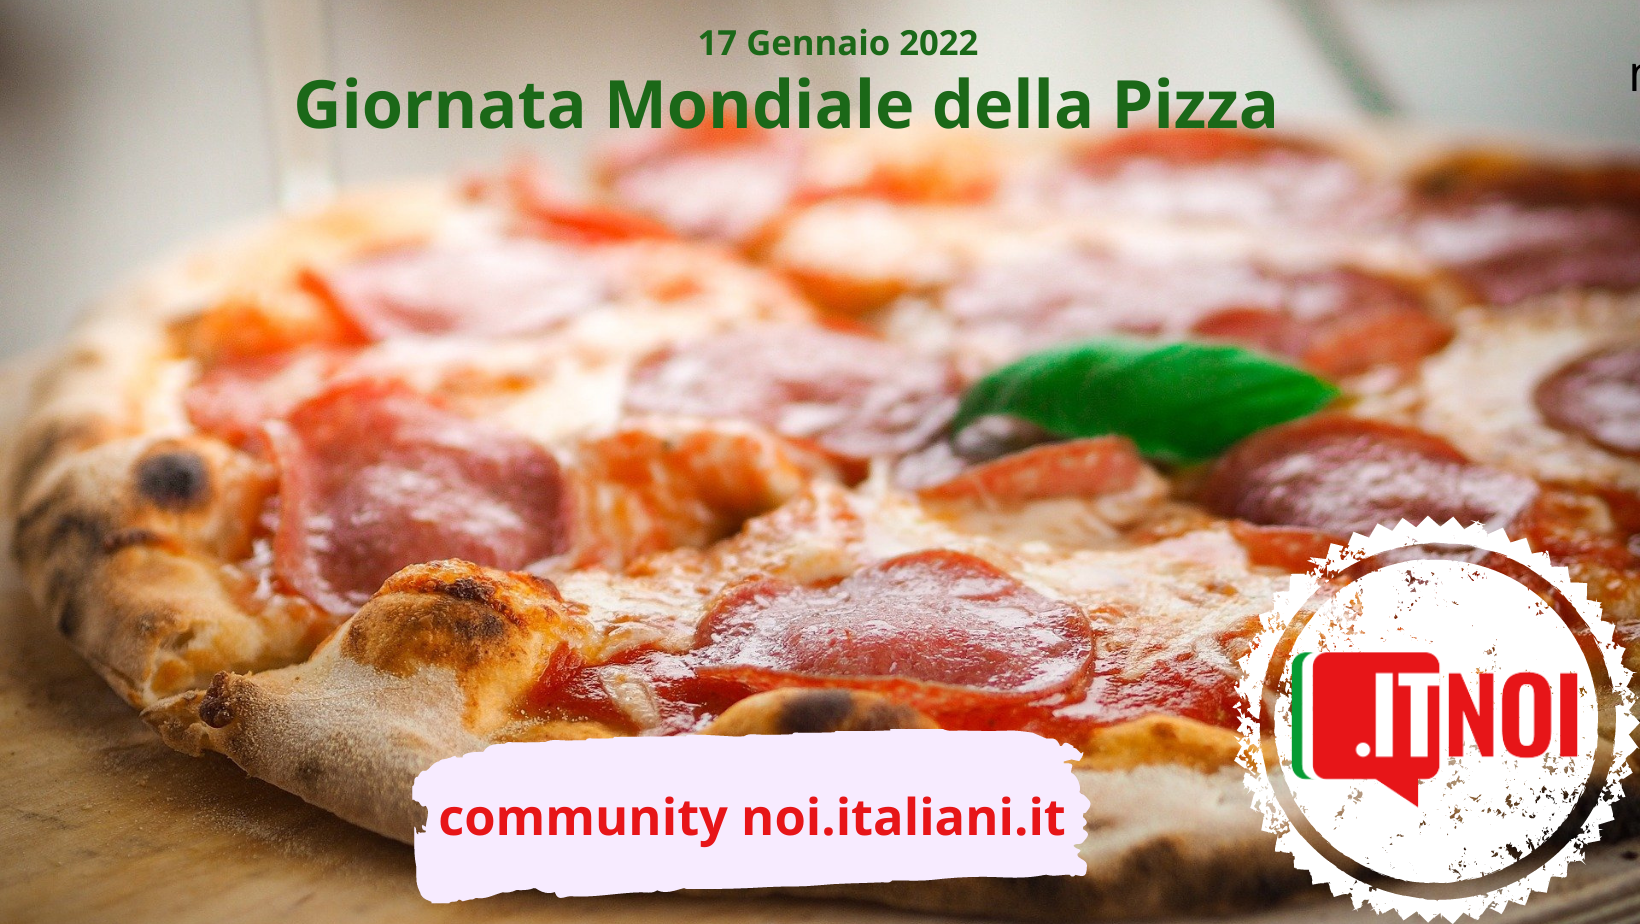 Giornata della pizza, amore eterno coi colori italiani